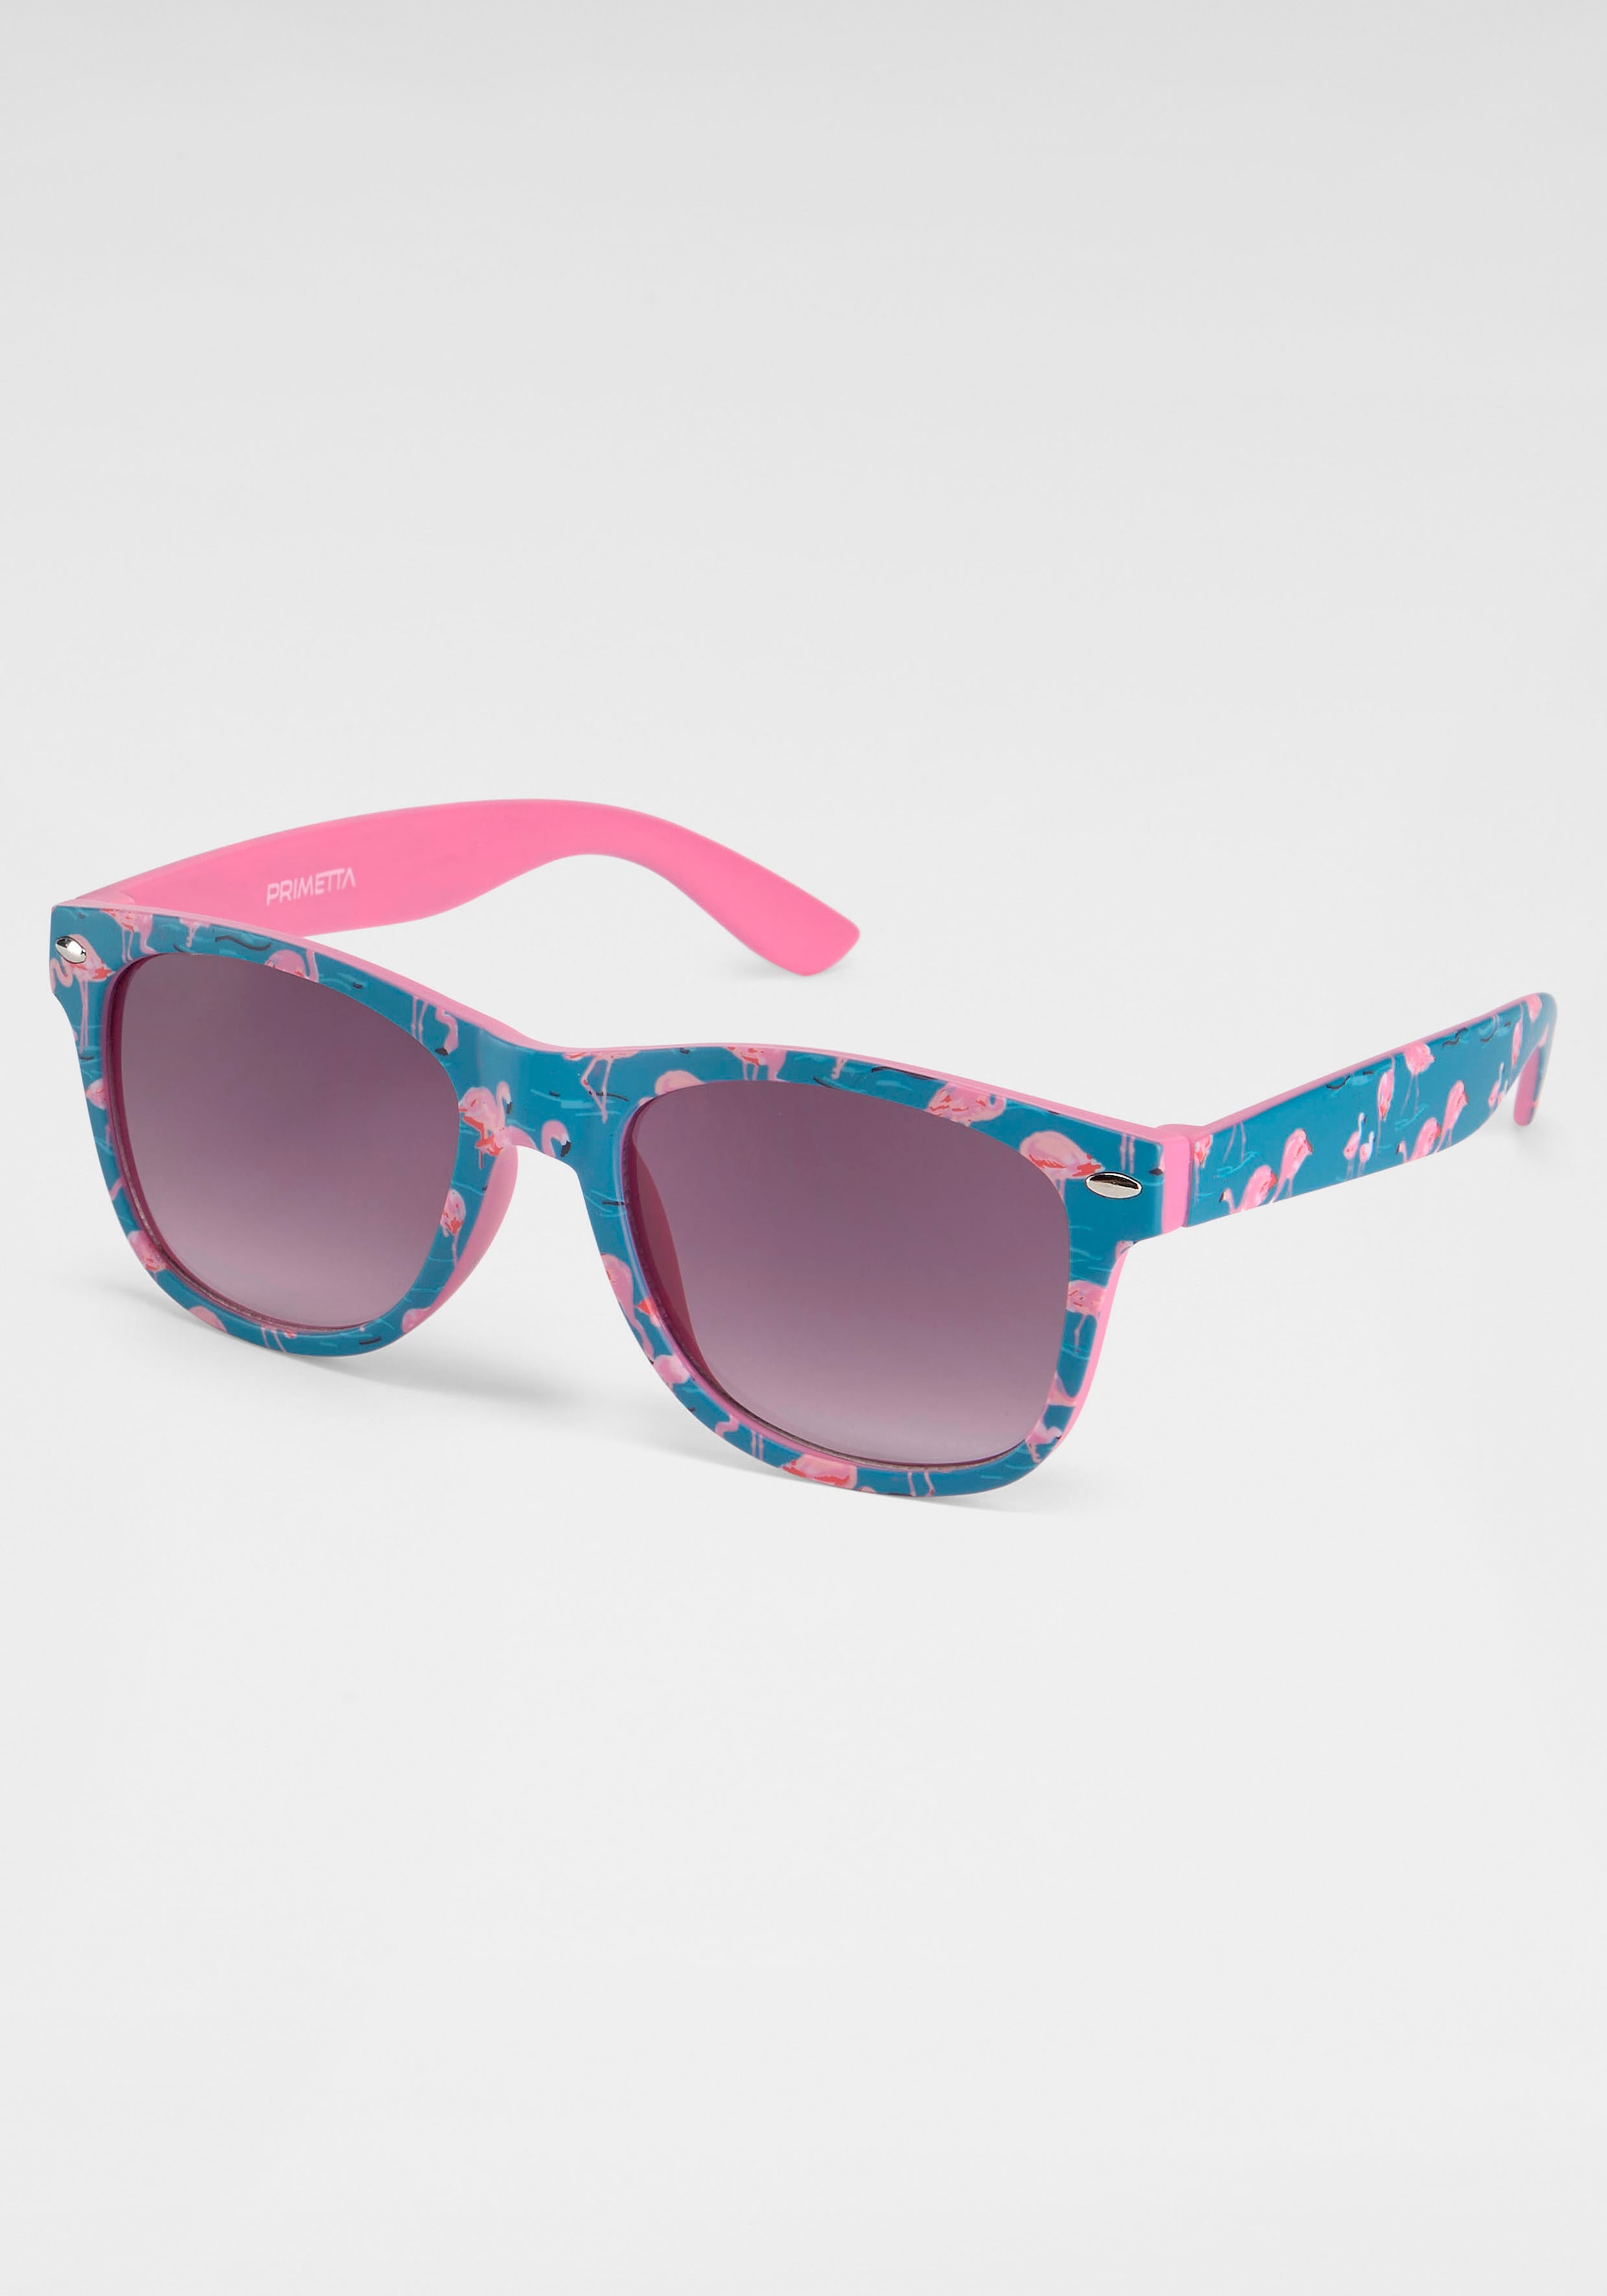 Sonnenbrille, Eyewear Flamingos bei PRIMETTA mit